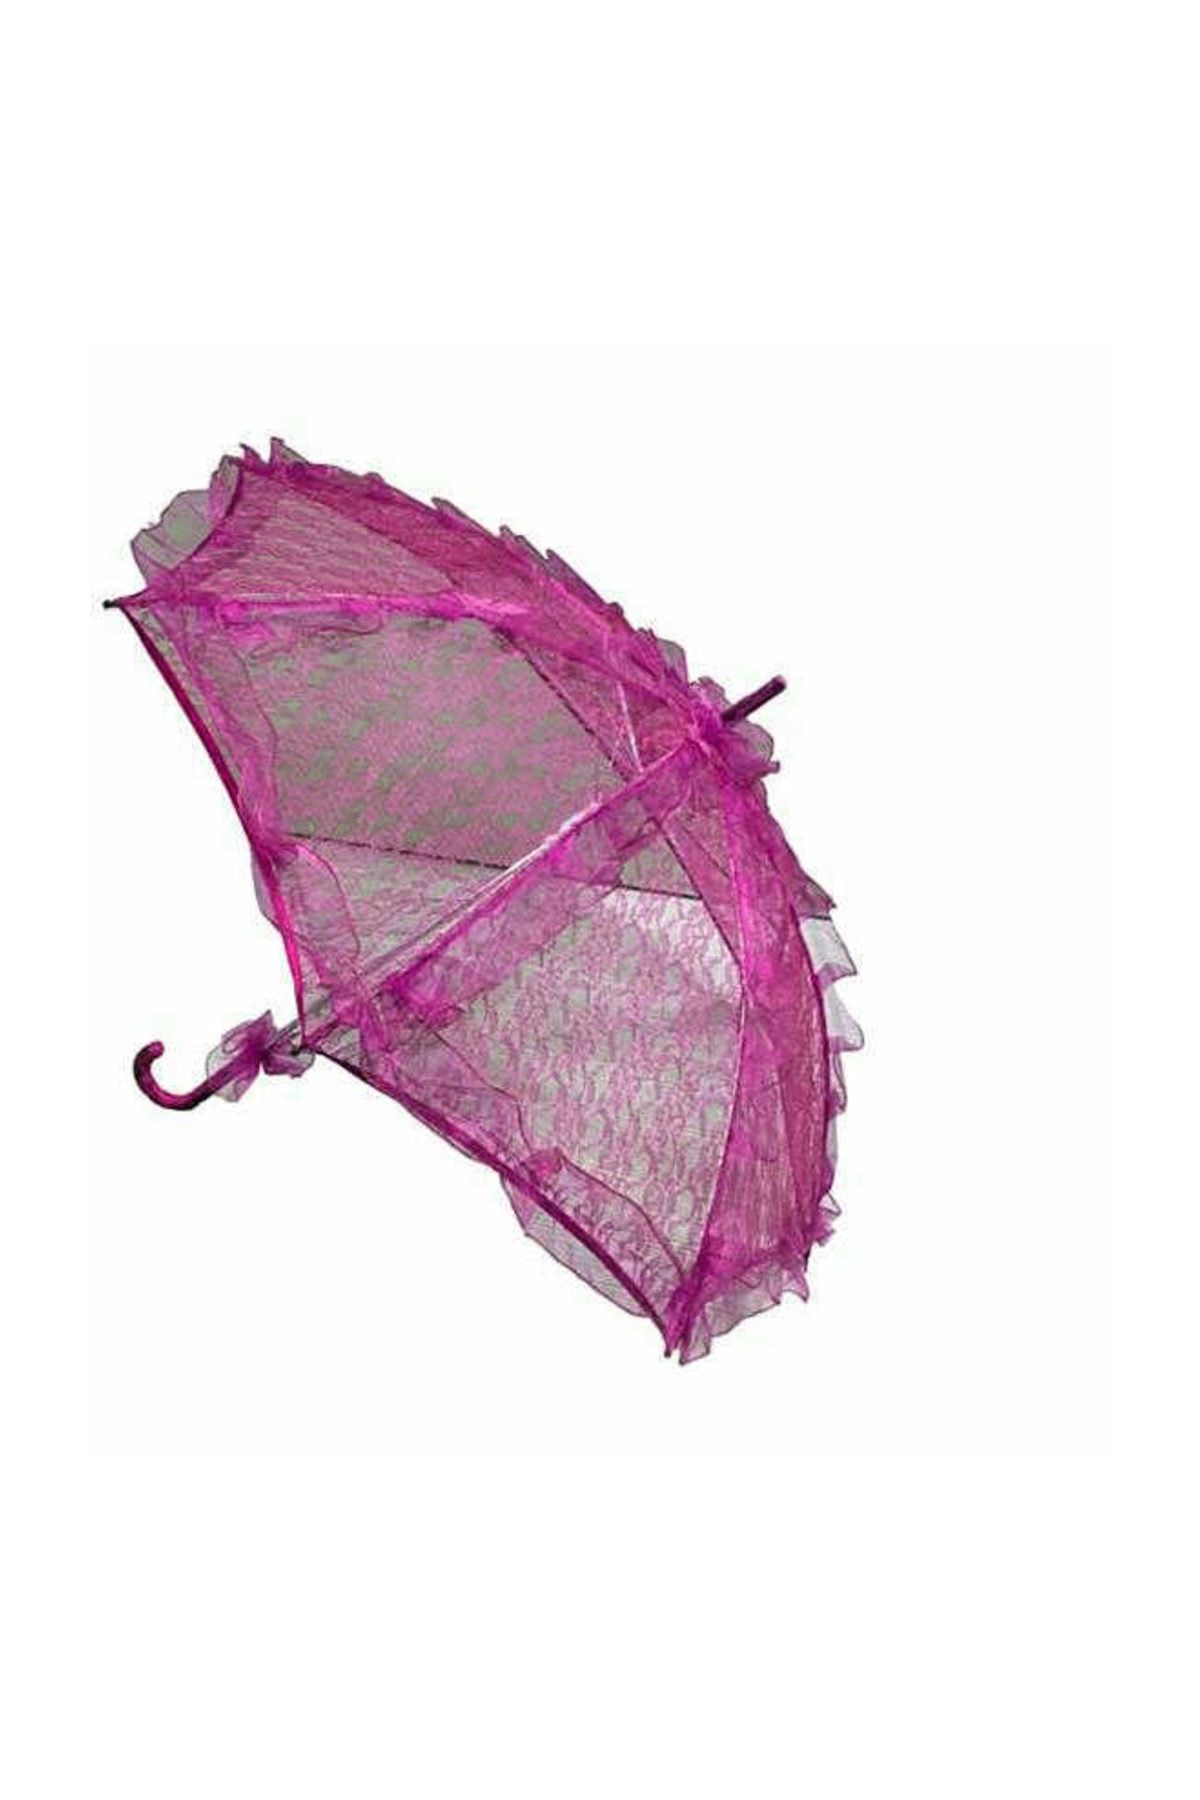 ELITETIME Dantel Gelin Şemsiyesi Dantelli Şemsiye Fuşya ( 78 cm * 75 cm )